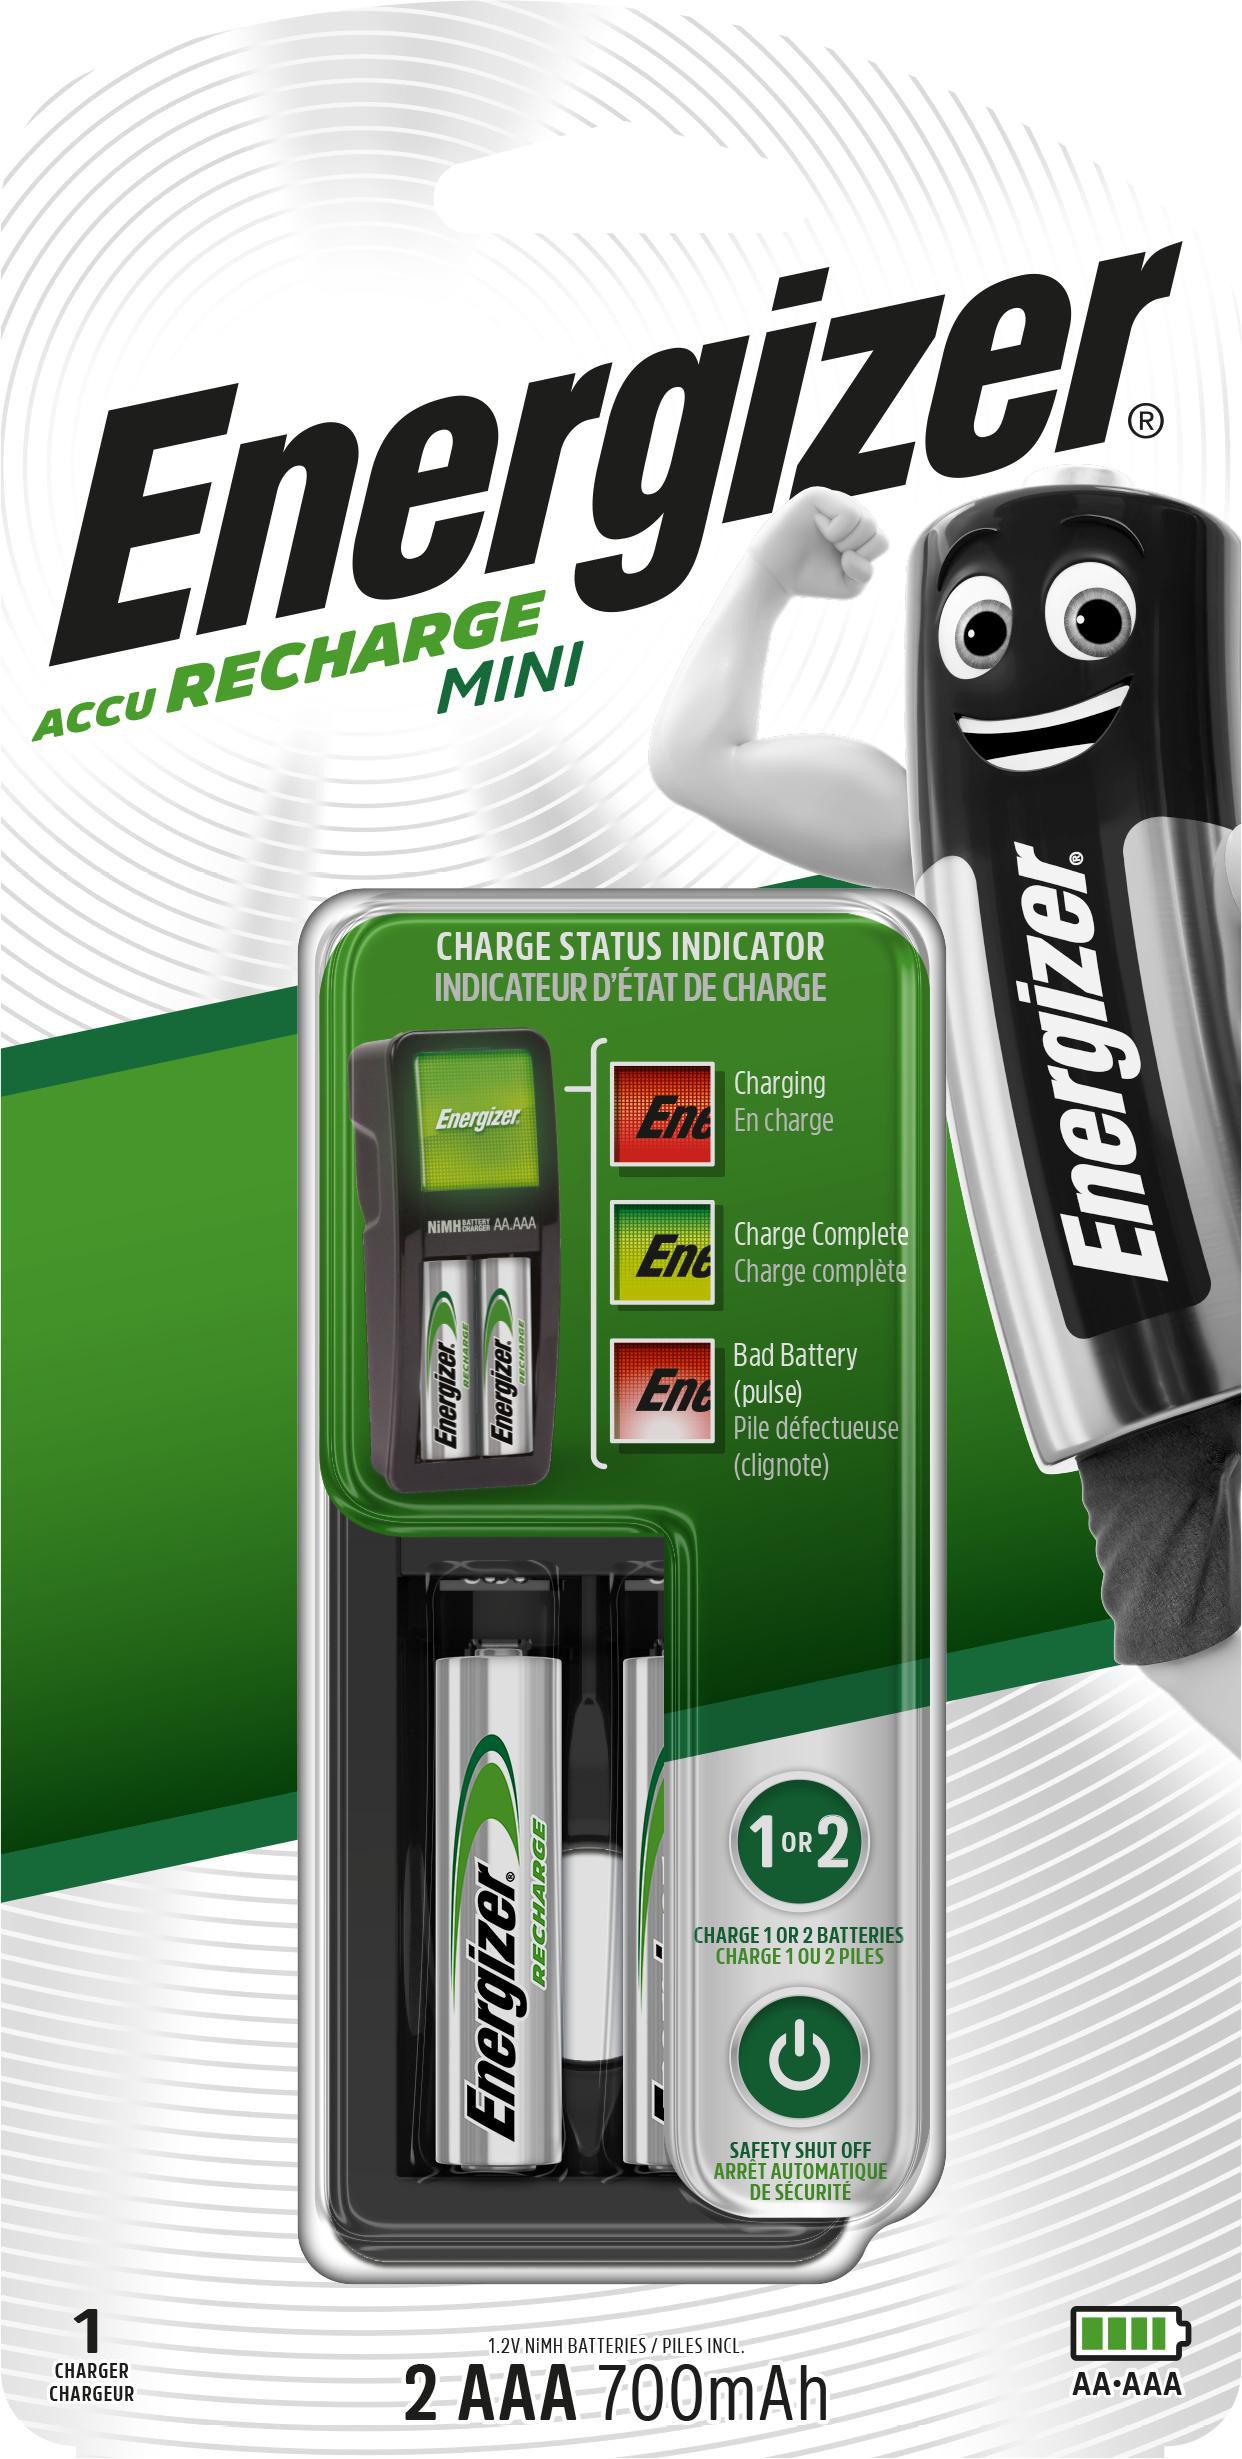 ENERGIZER Rundzellen-Ladegerät NiMH inkl. Akkus Energizer Mini-Charger Micro (AAA), Mignon (AA)